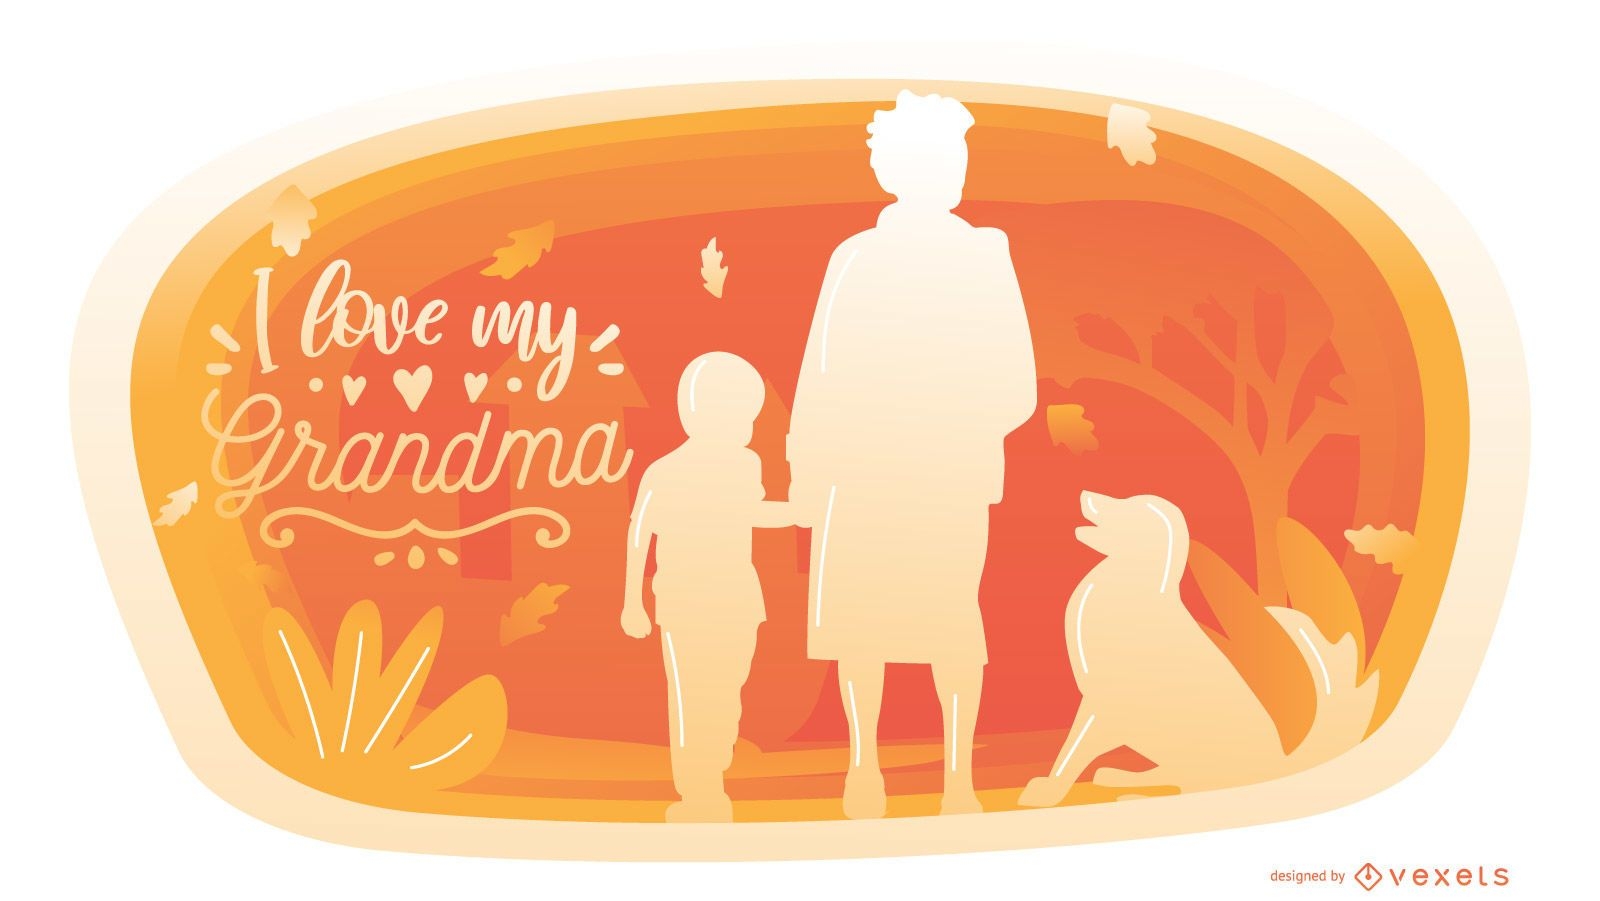 Grandma Family Quote Graphic Design